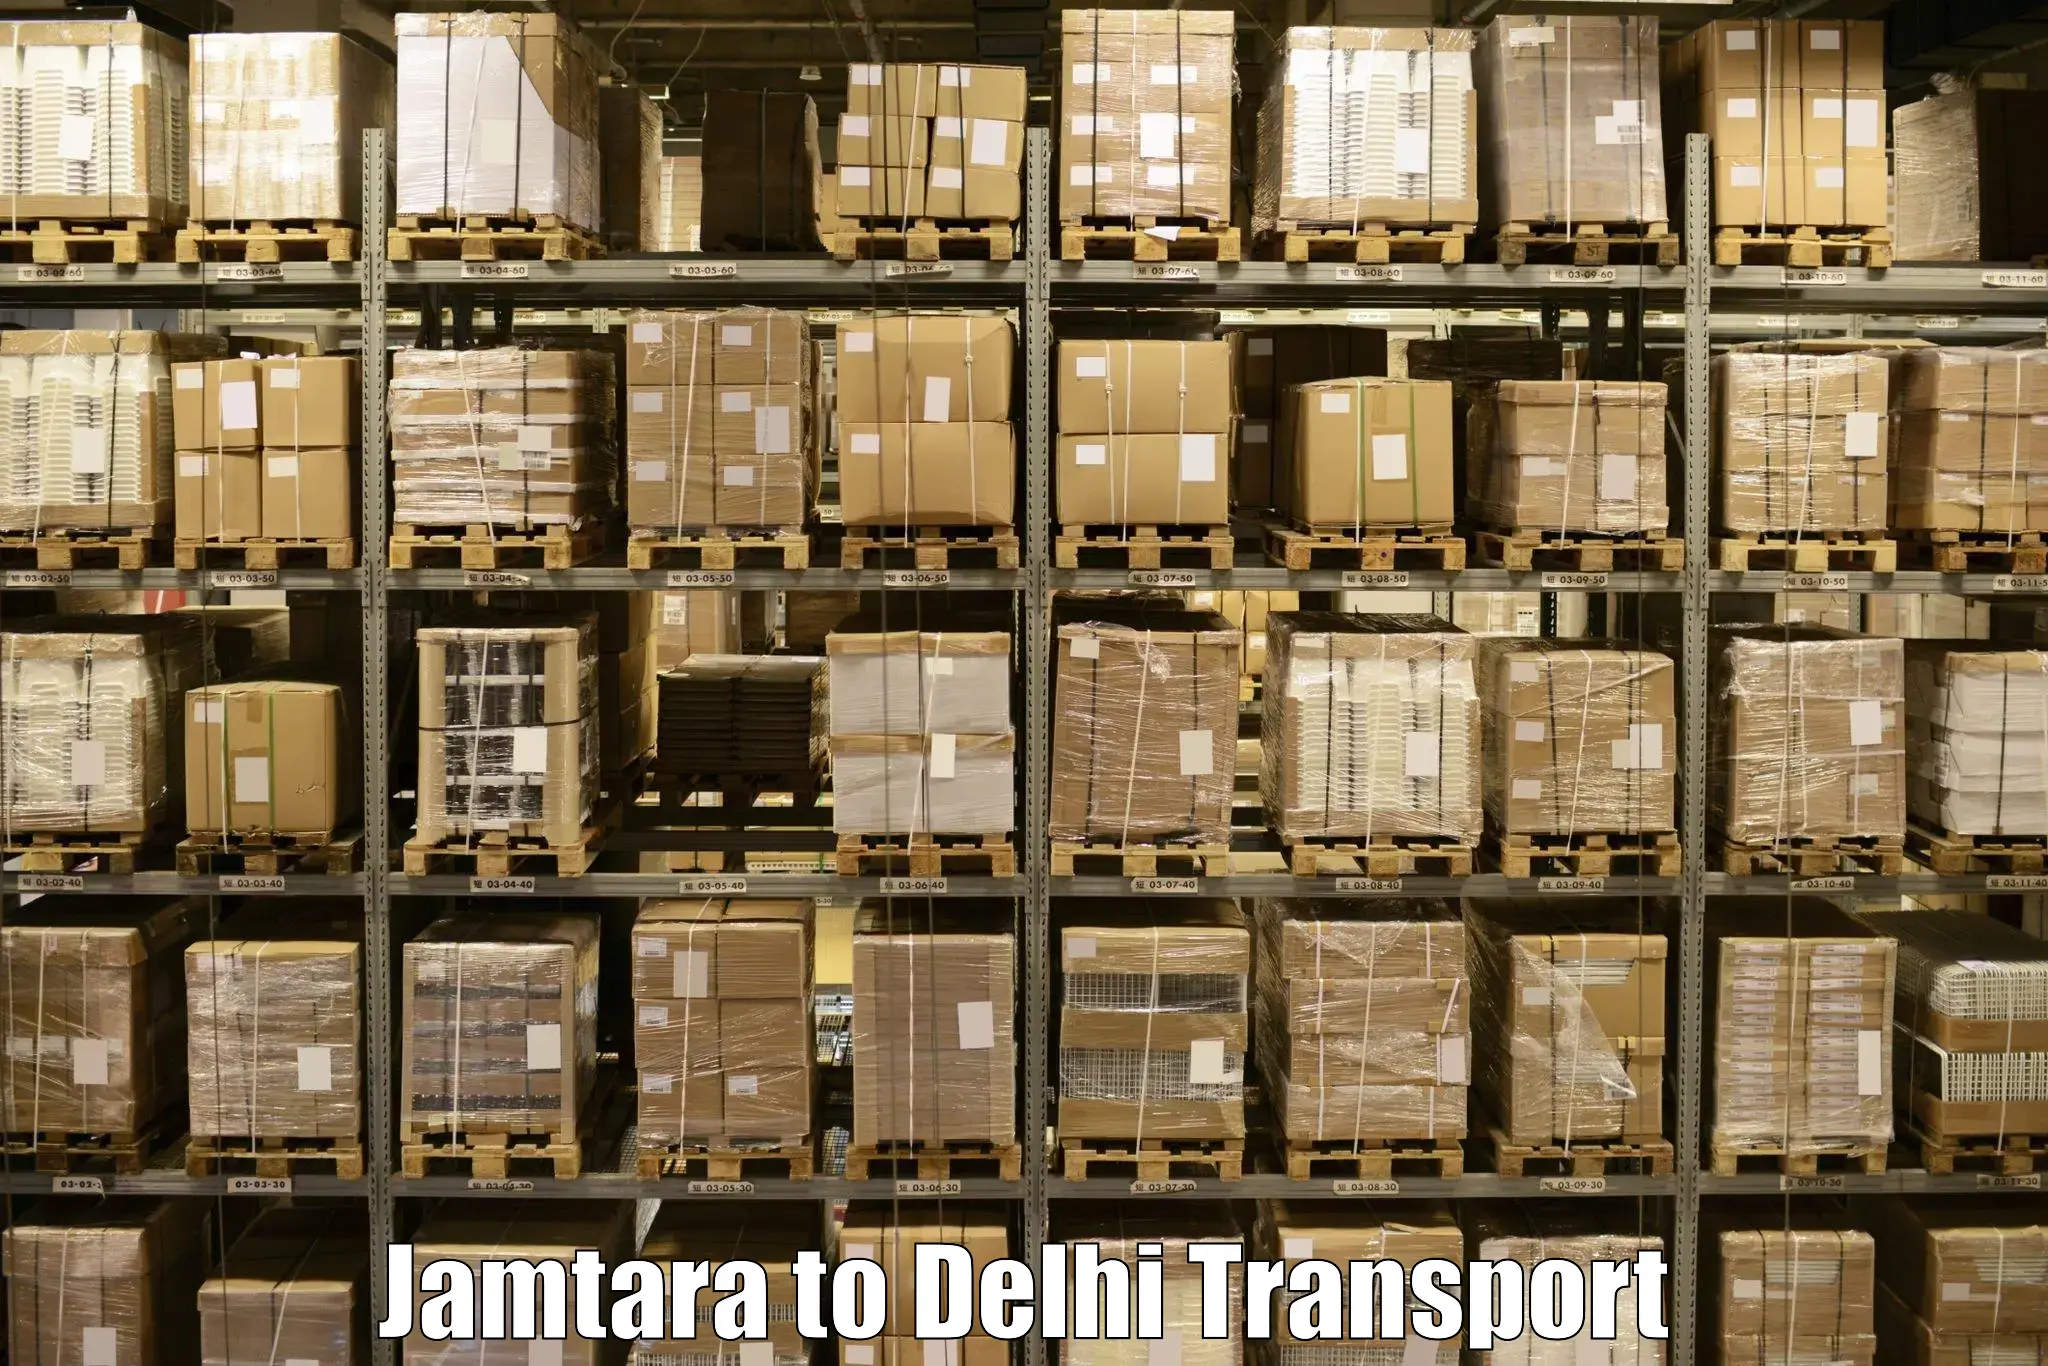 Commercial transport service Jamtara to Kalkaji